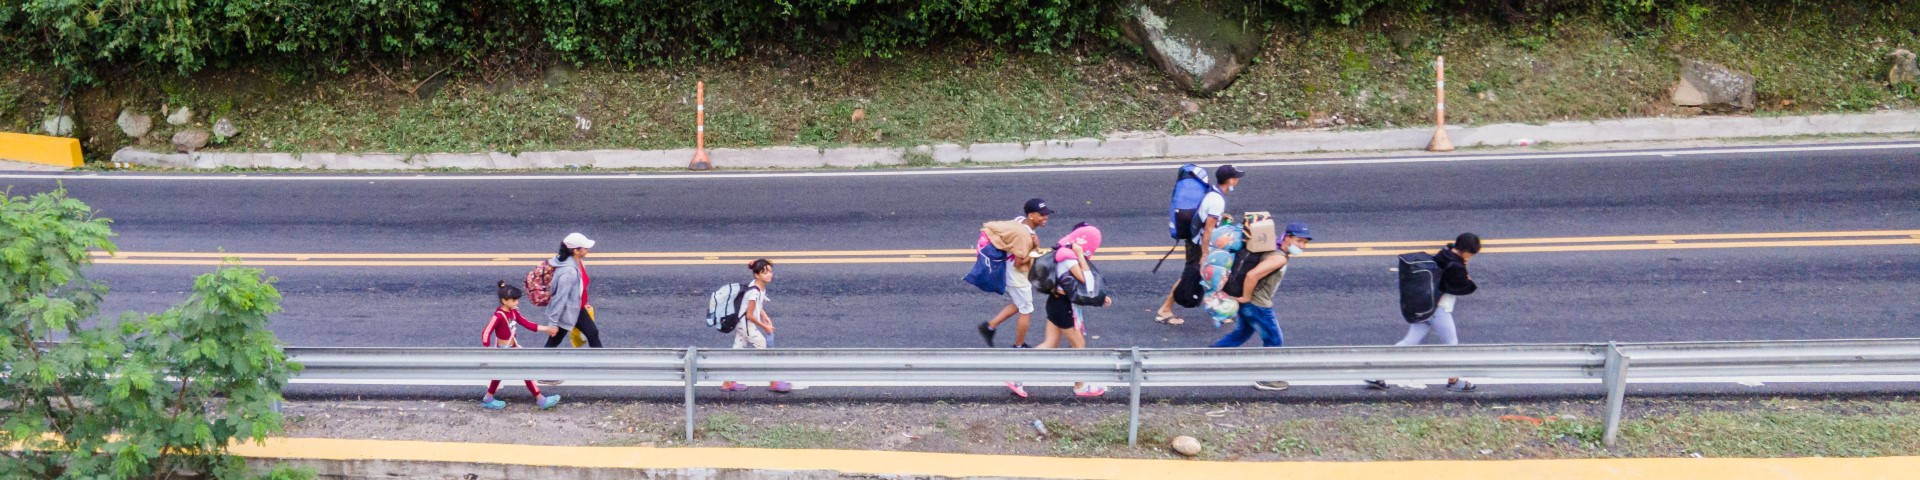 Un grupo de personas desplazadas camina por una carretera.